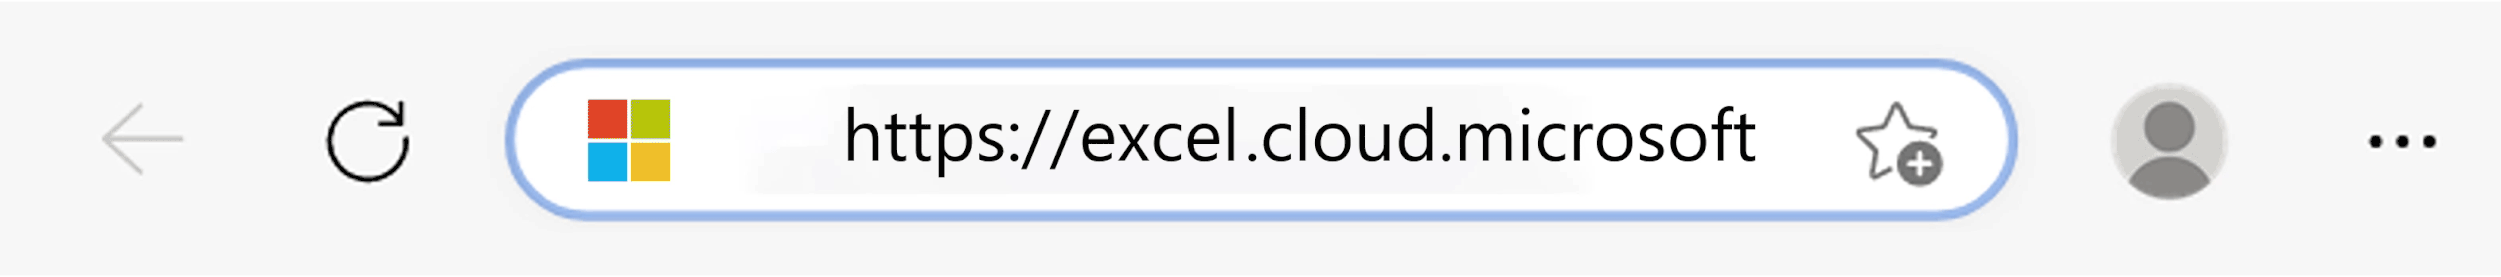 URL cloudmicrosoft